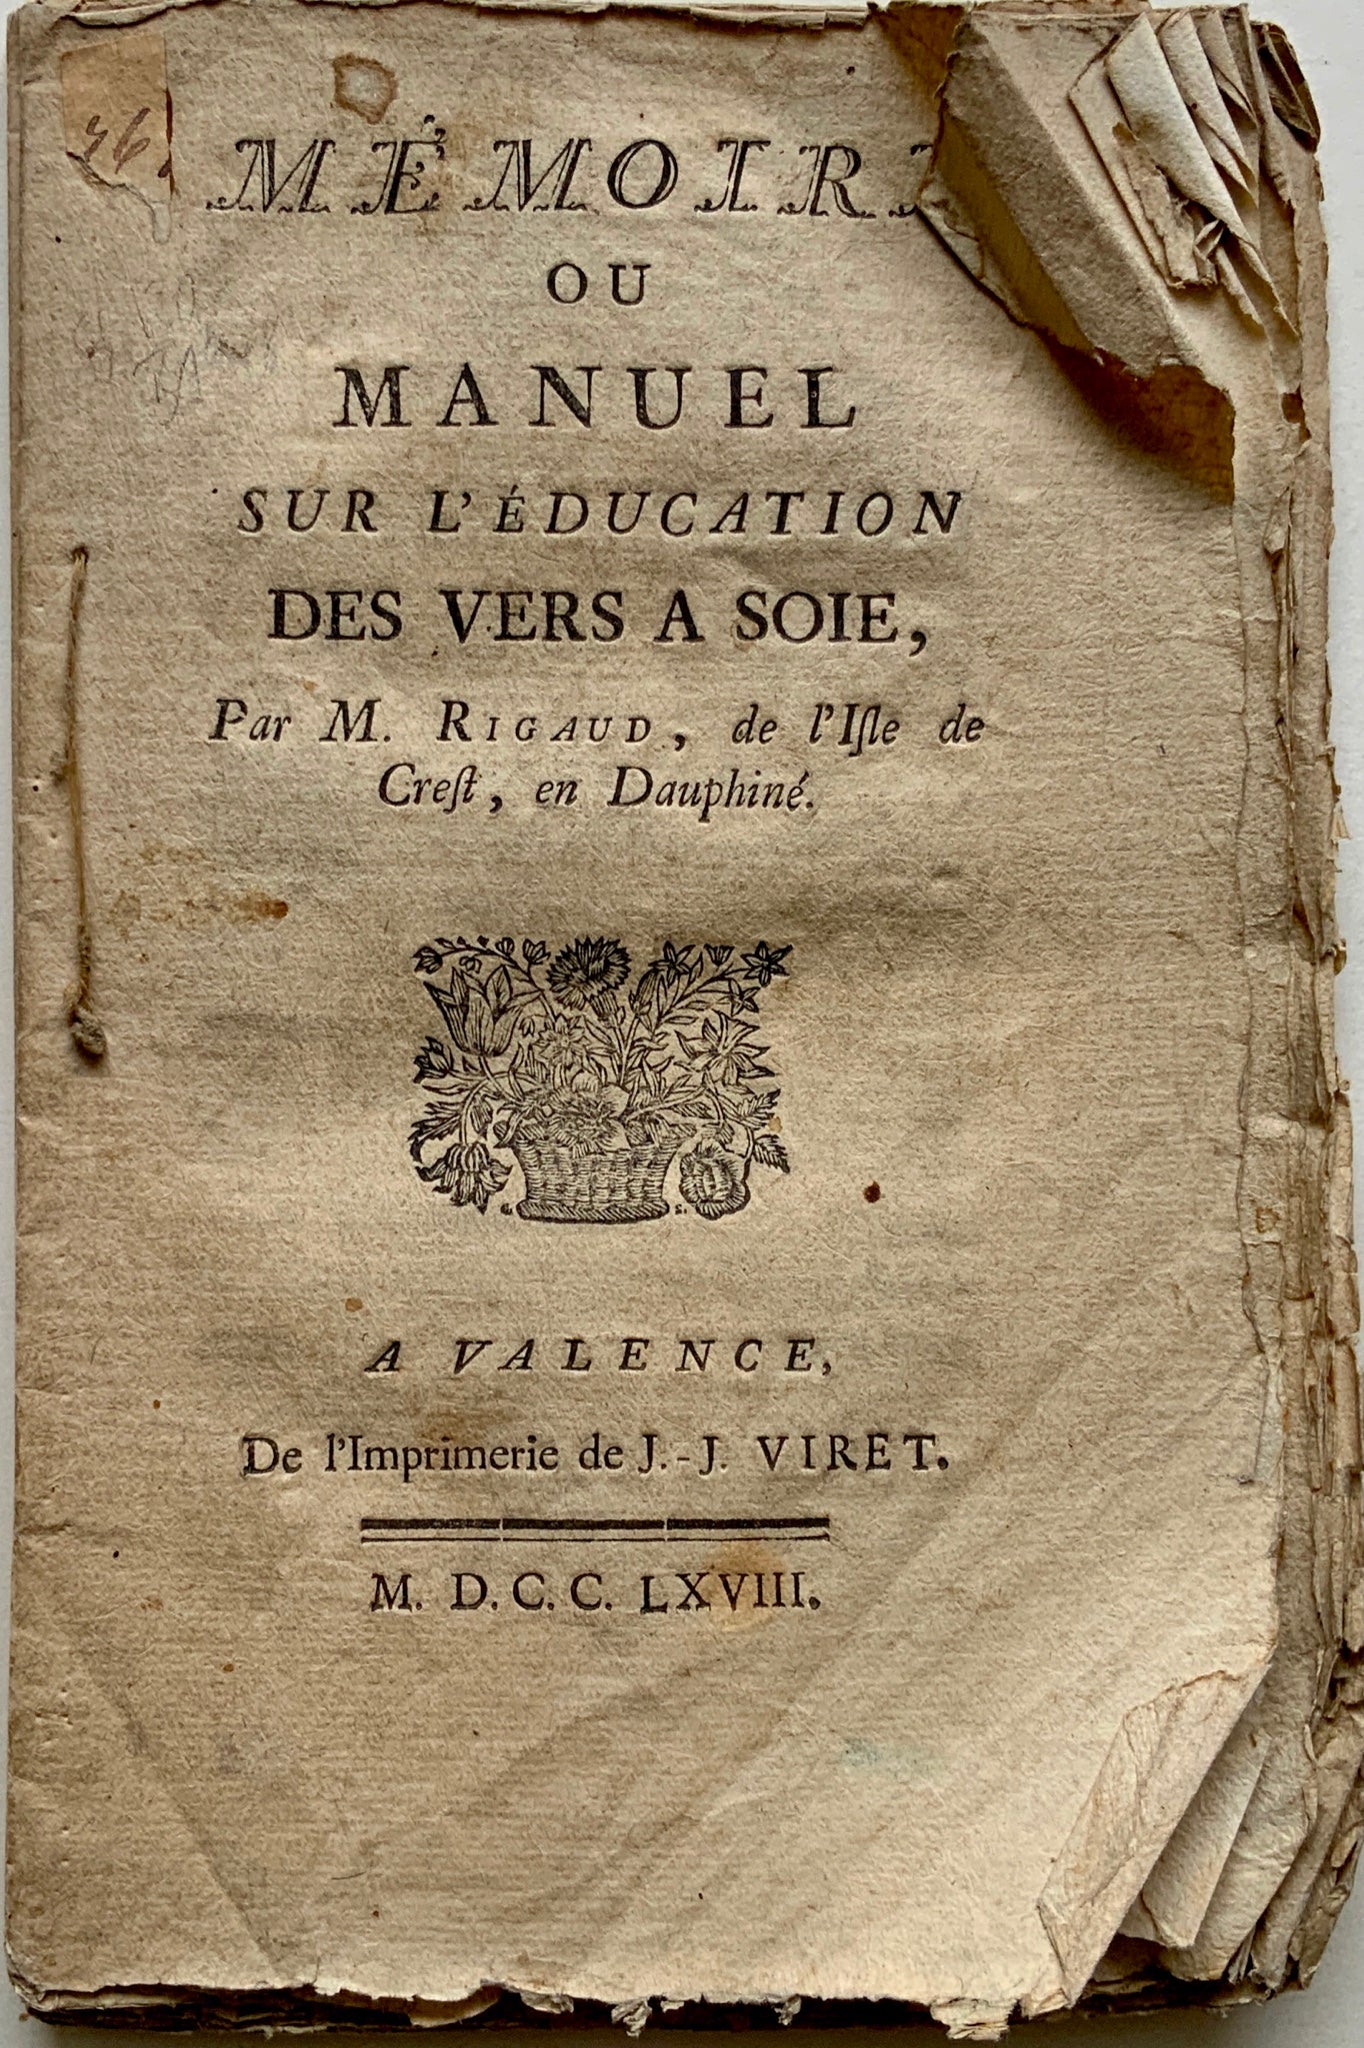 1768 SILKWORMS Rigaud (M.) Sur l'éducation des vers à soie - Natural History - Book